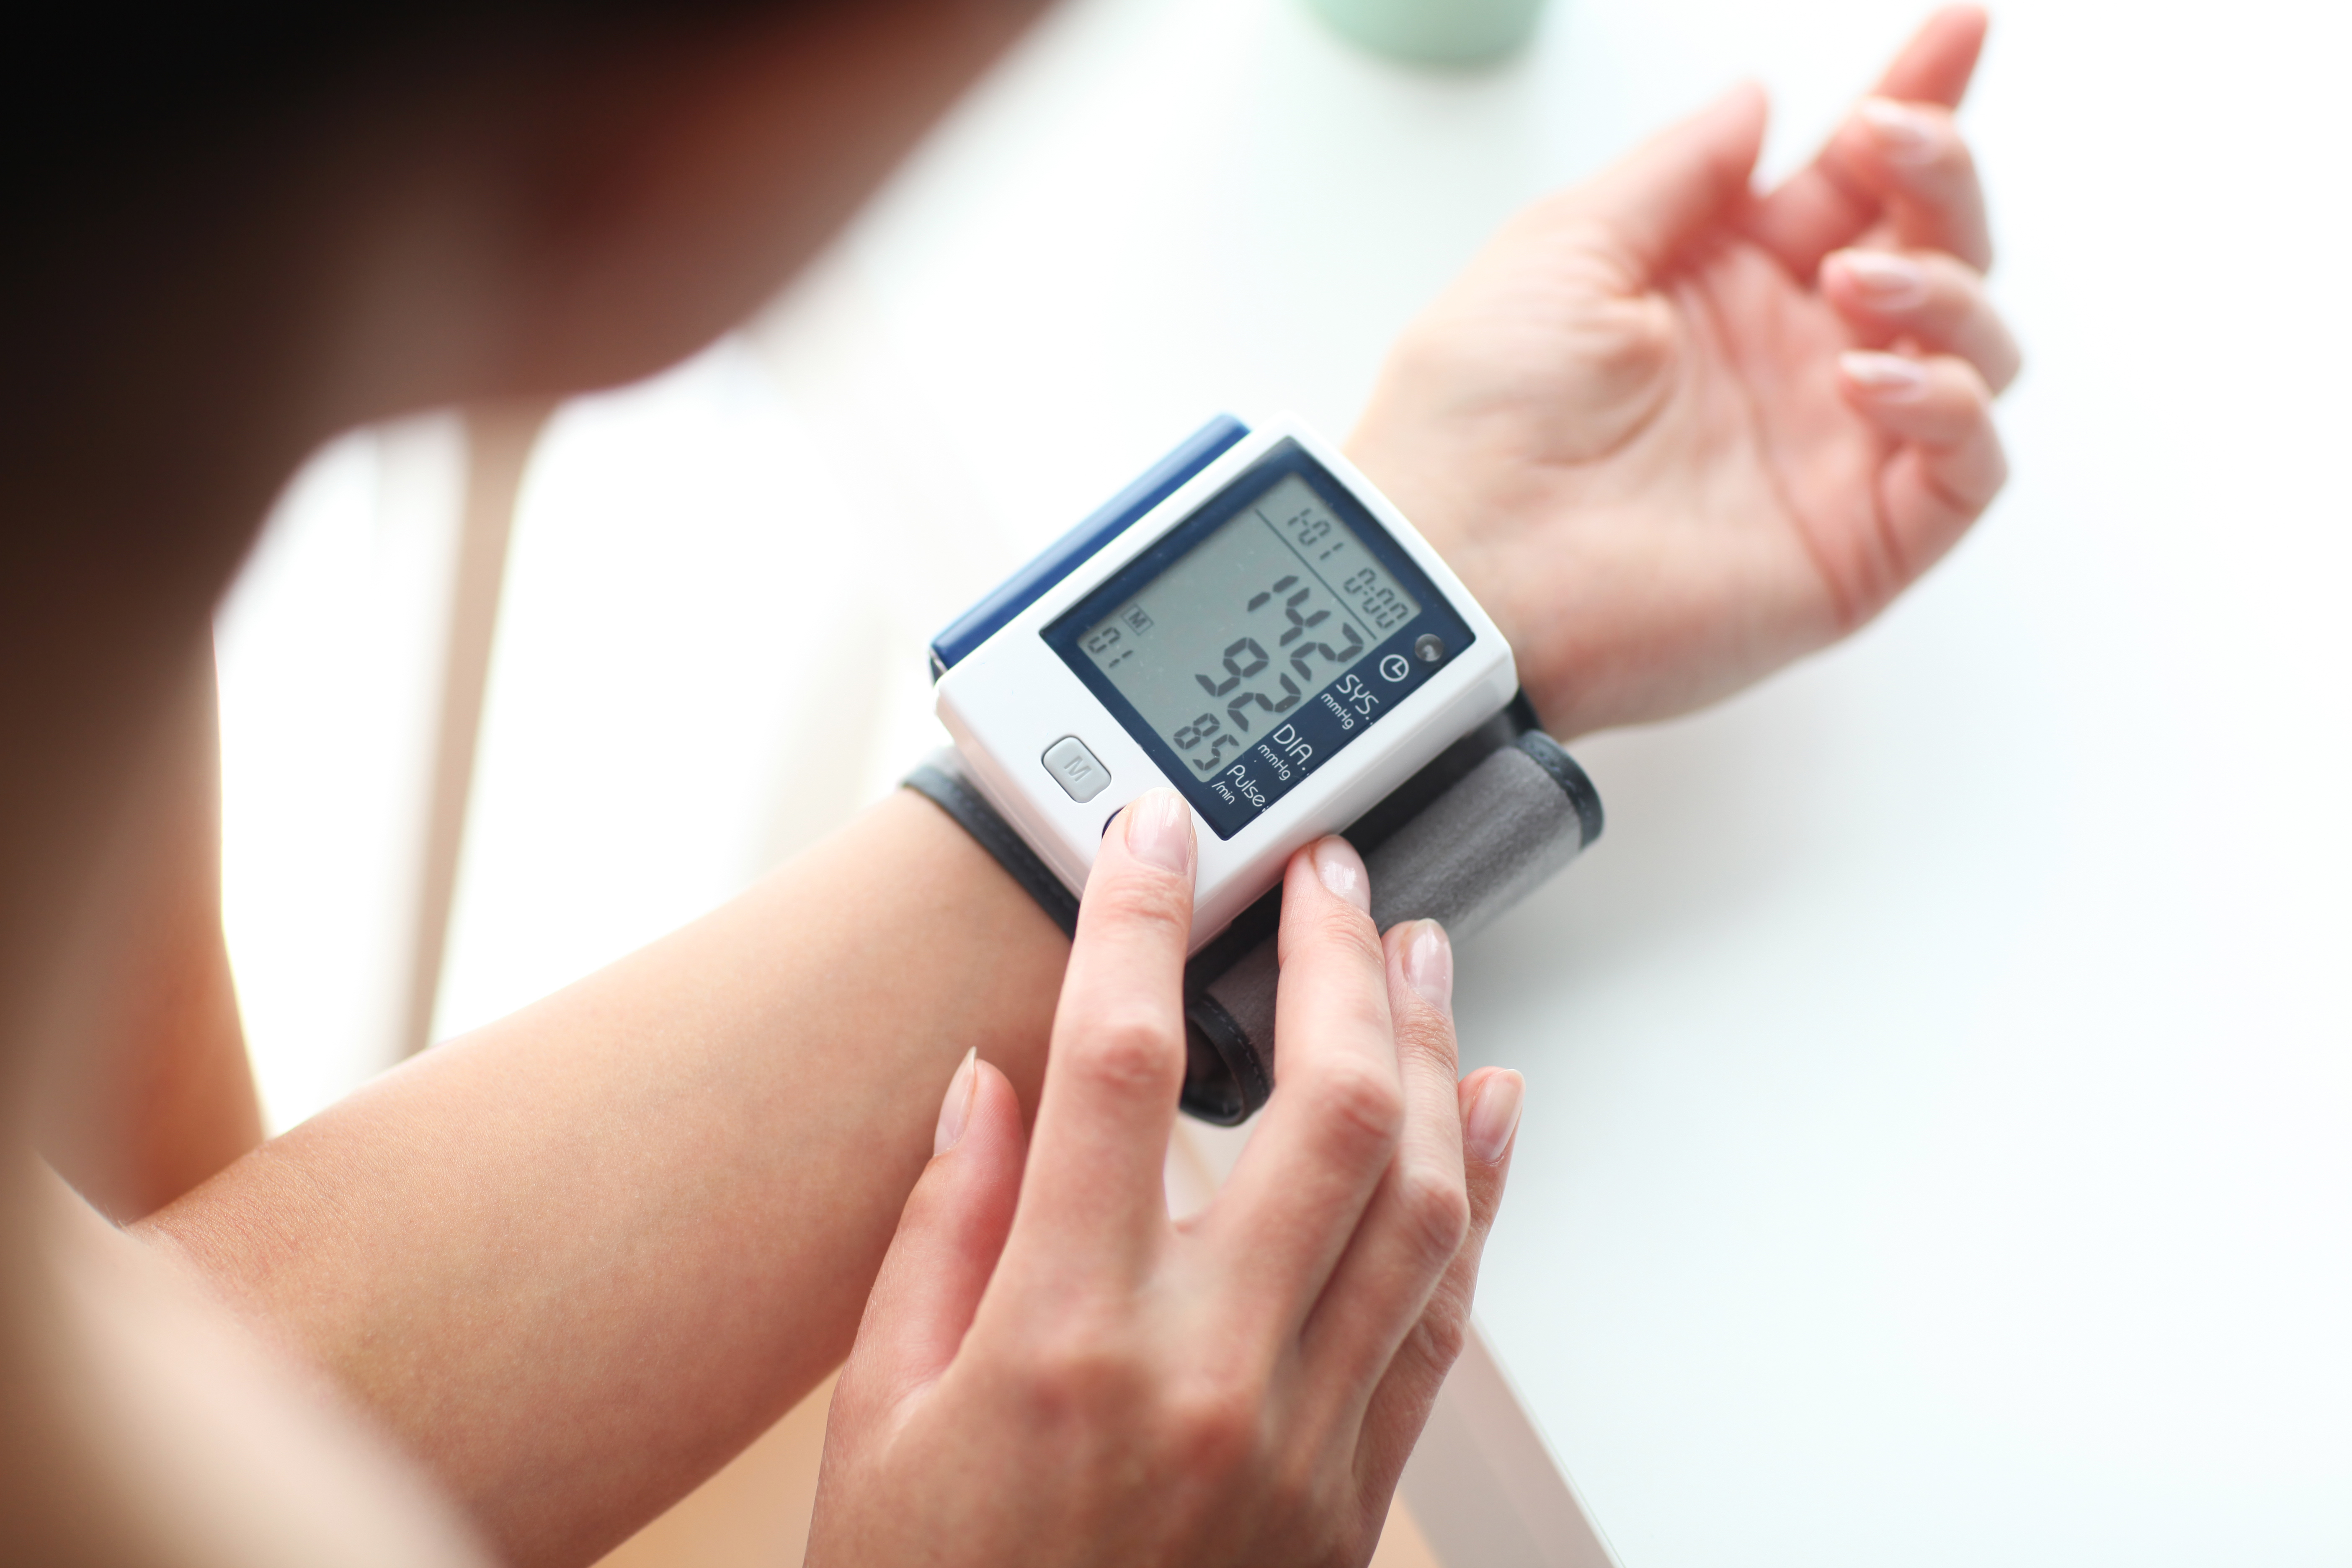 Magas vérnyomás kezelése - Válasz Olvasómnak szám